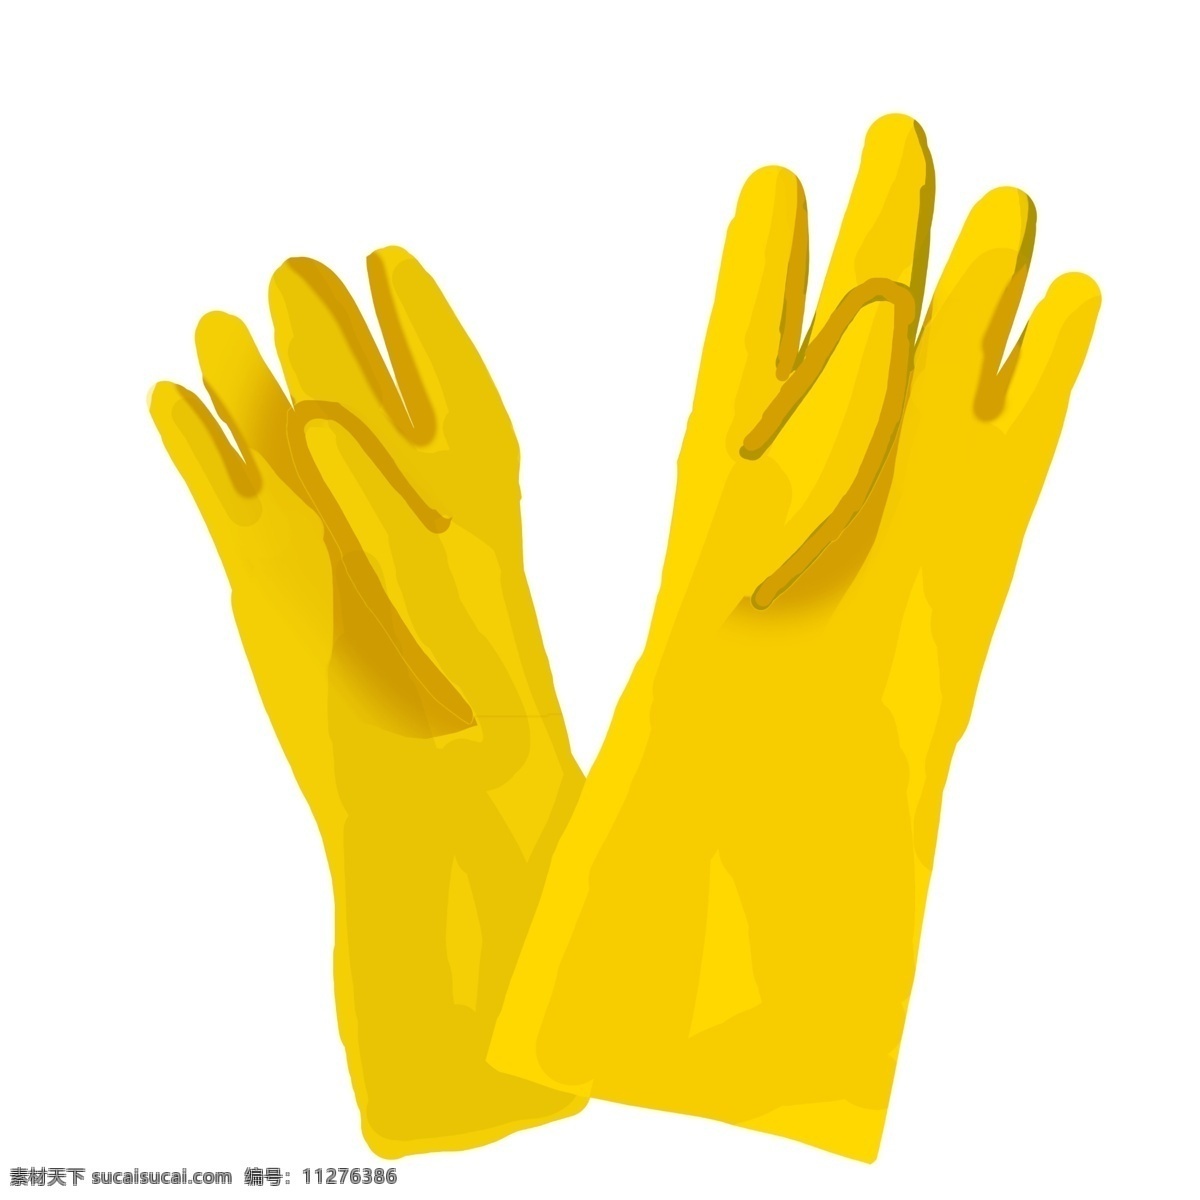 黄色 的卡 通 橡胶 手套 清洁手套插画 黄色的手套 橡胶手套 卡通手套插画 节日插画 世界卫生日